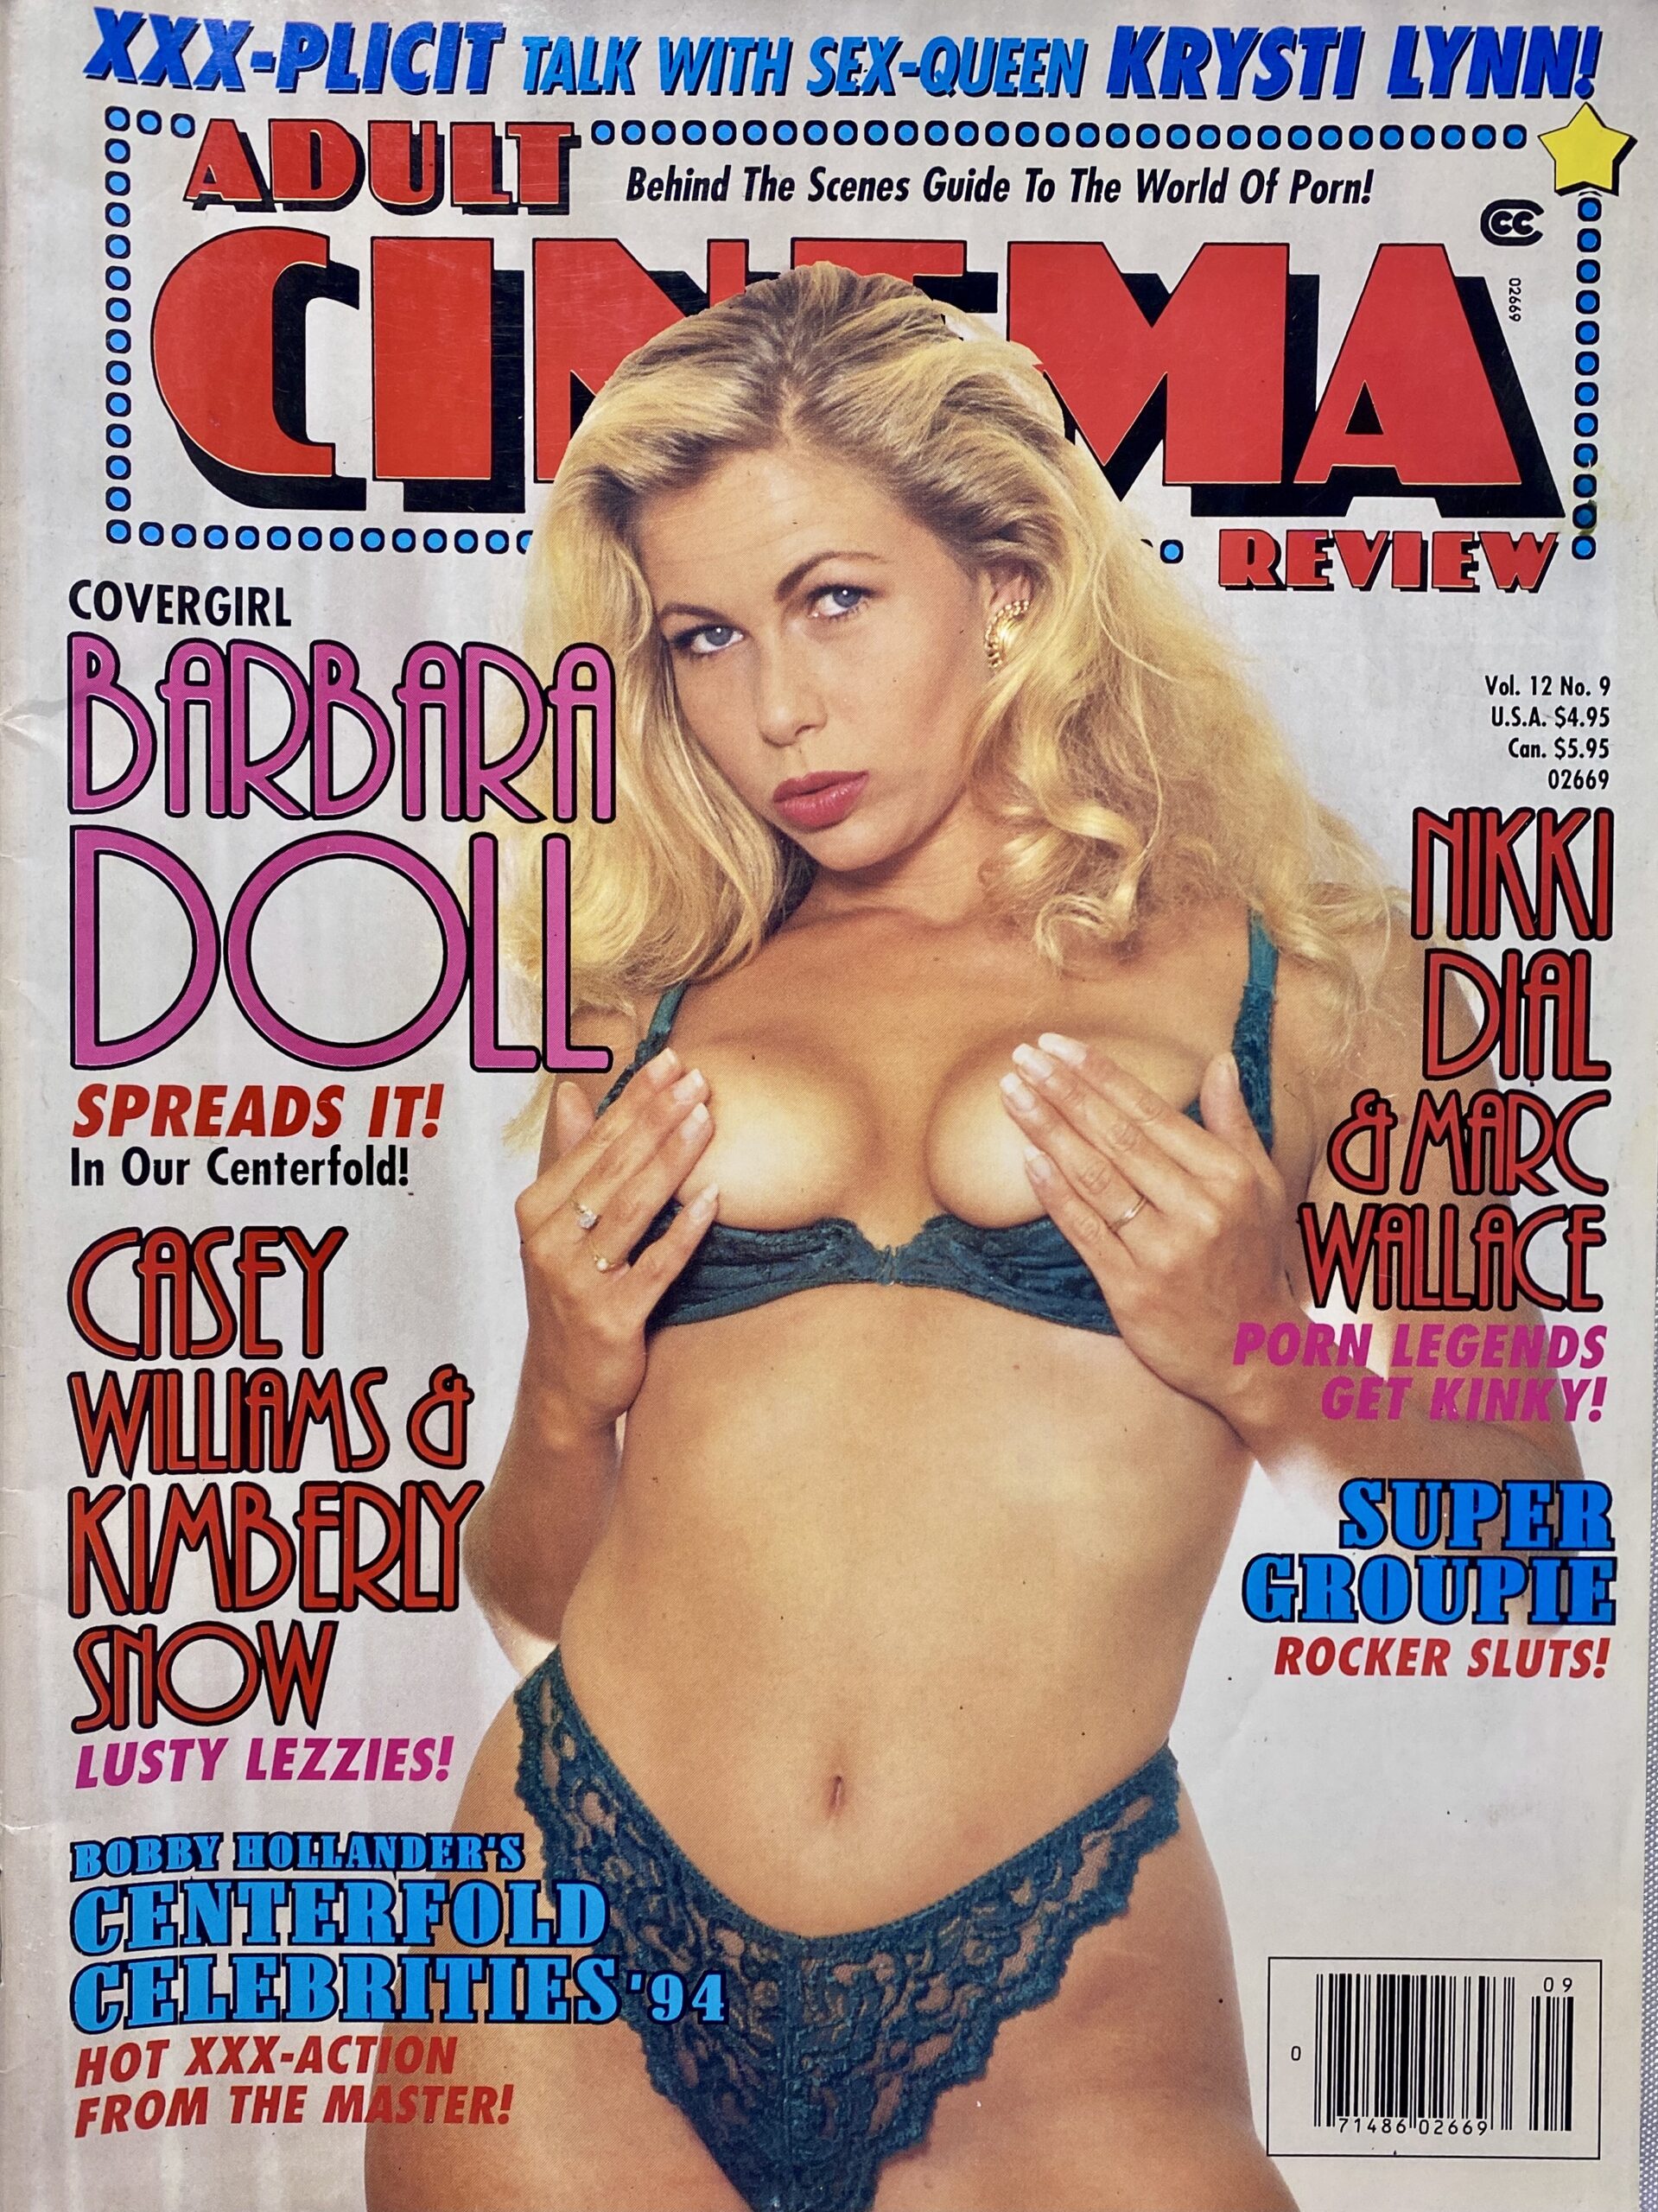 1990s porn magazines